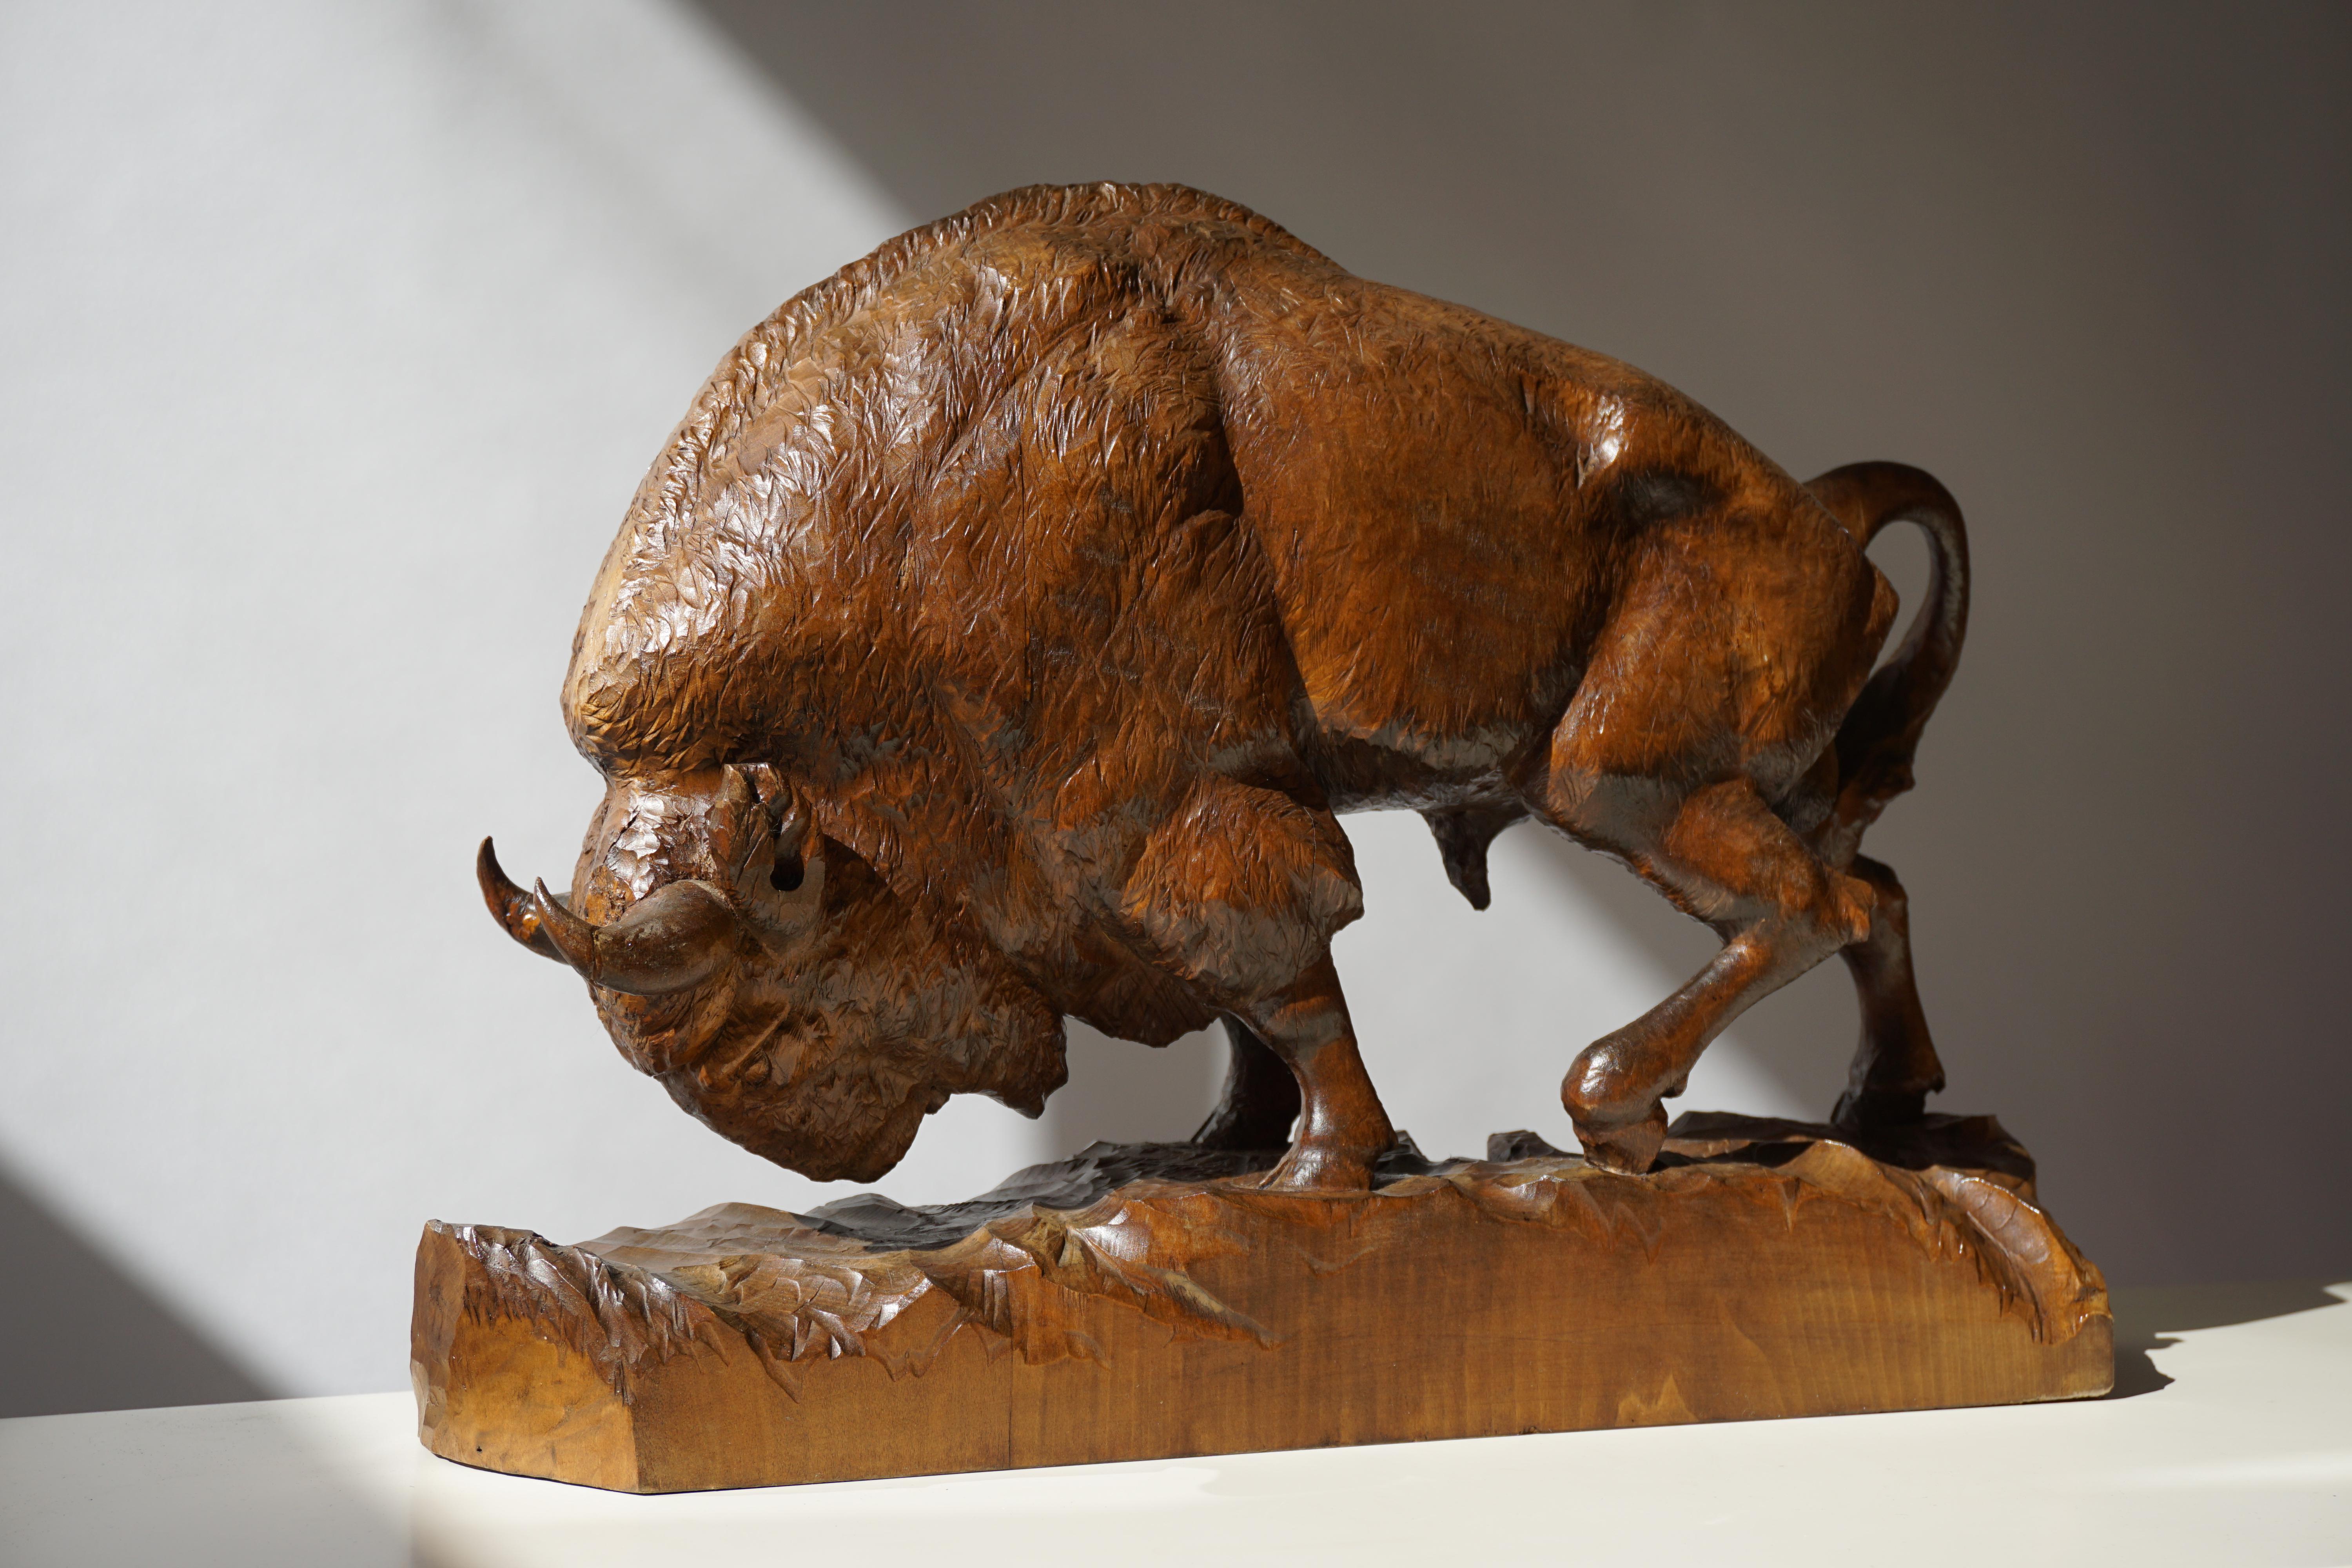 Carved Bison Sculpture in Wood